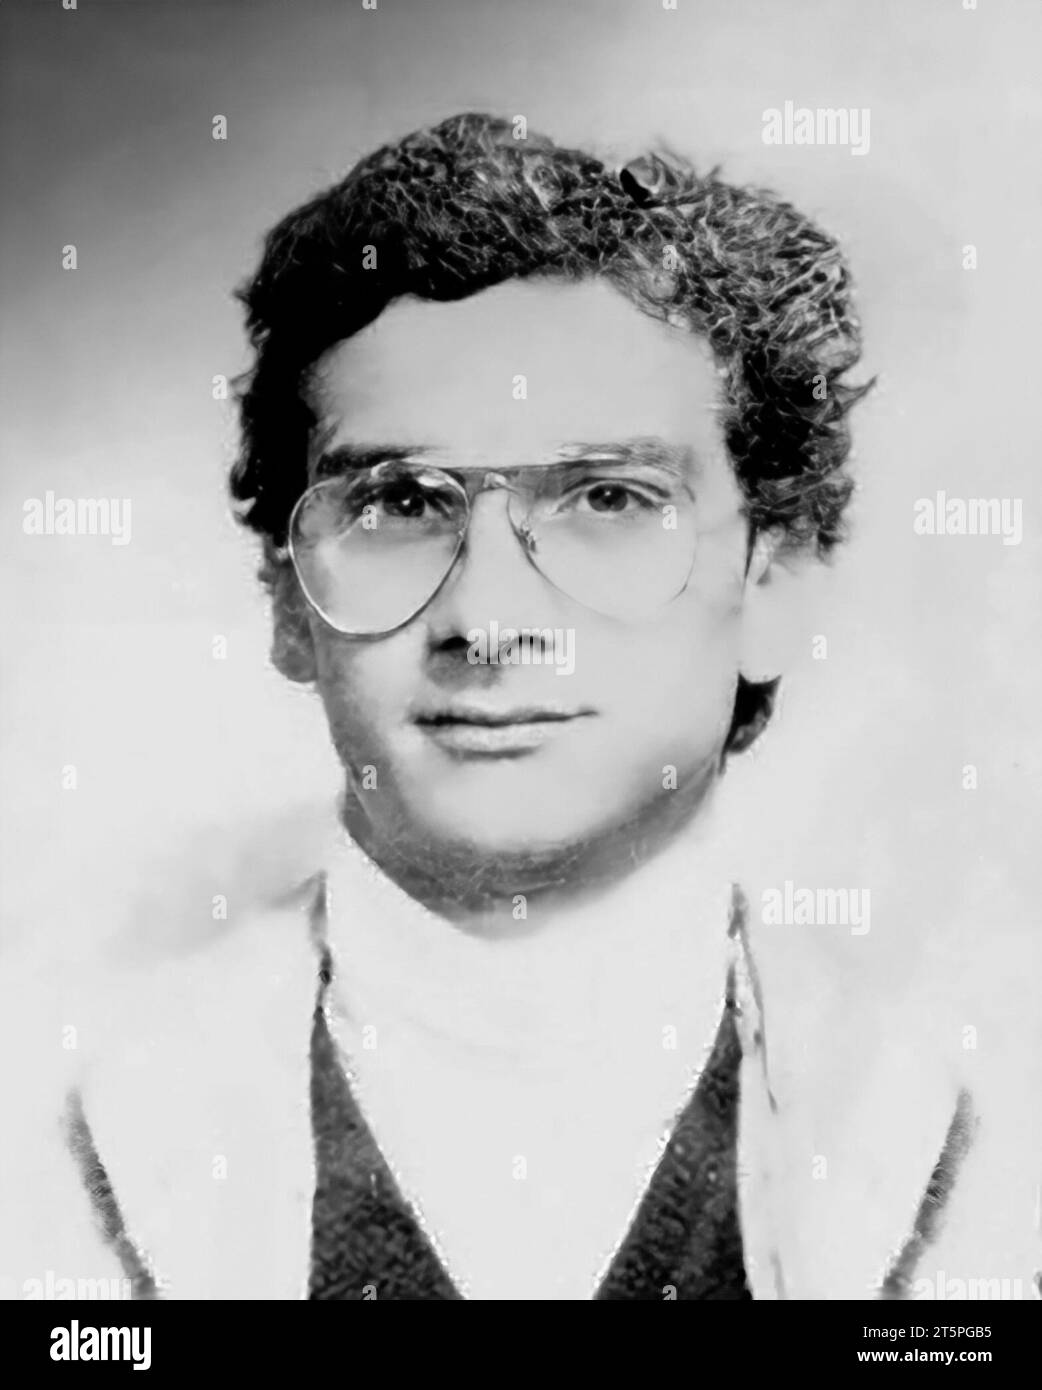 Messina Denaro. Ritratto del boss mafioso siciliano, Matteo Messina Denaro (1962-2023), da giovane della sua carta d'identità (foto restaurata e ritoccata) Foto Stock